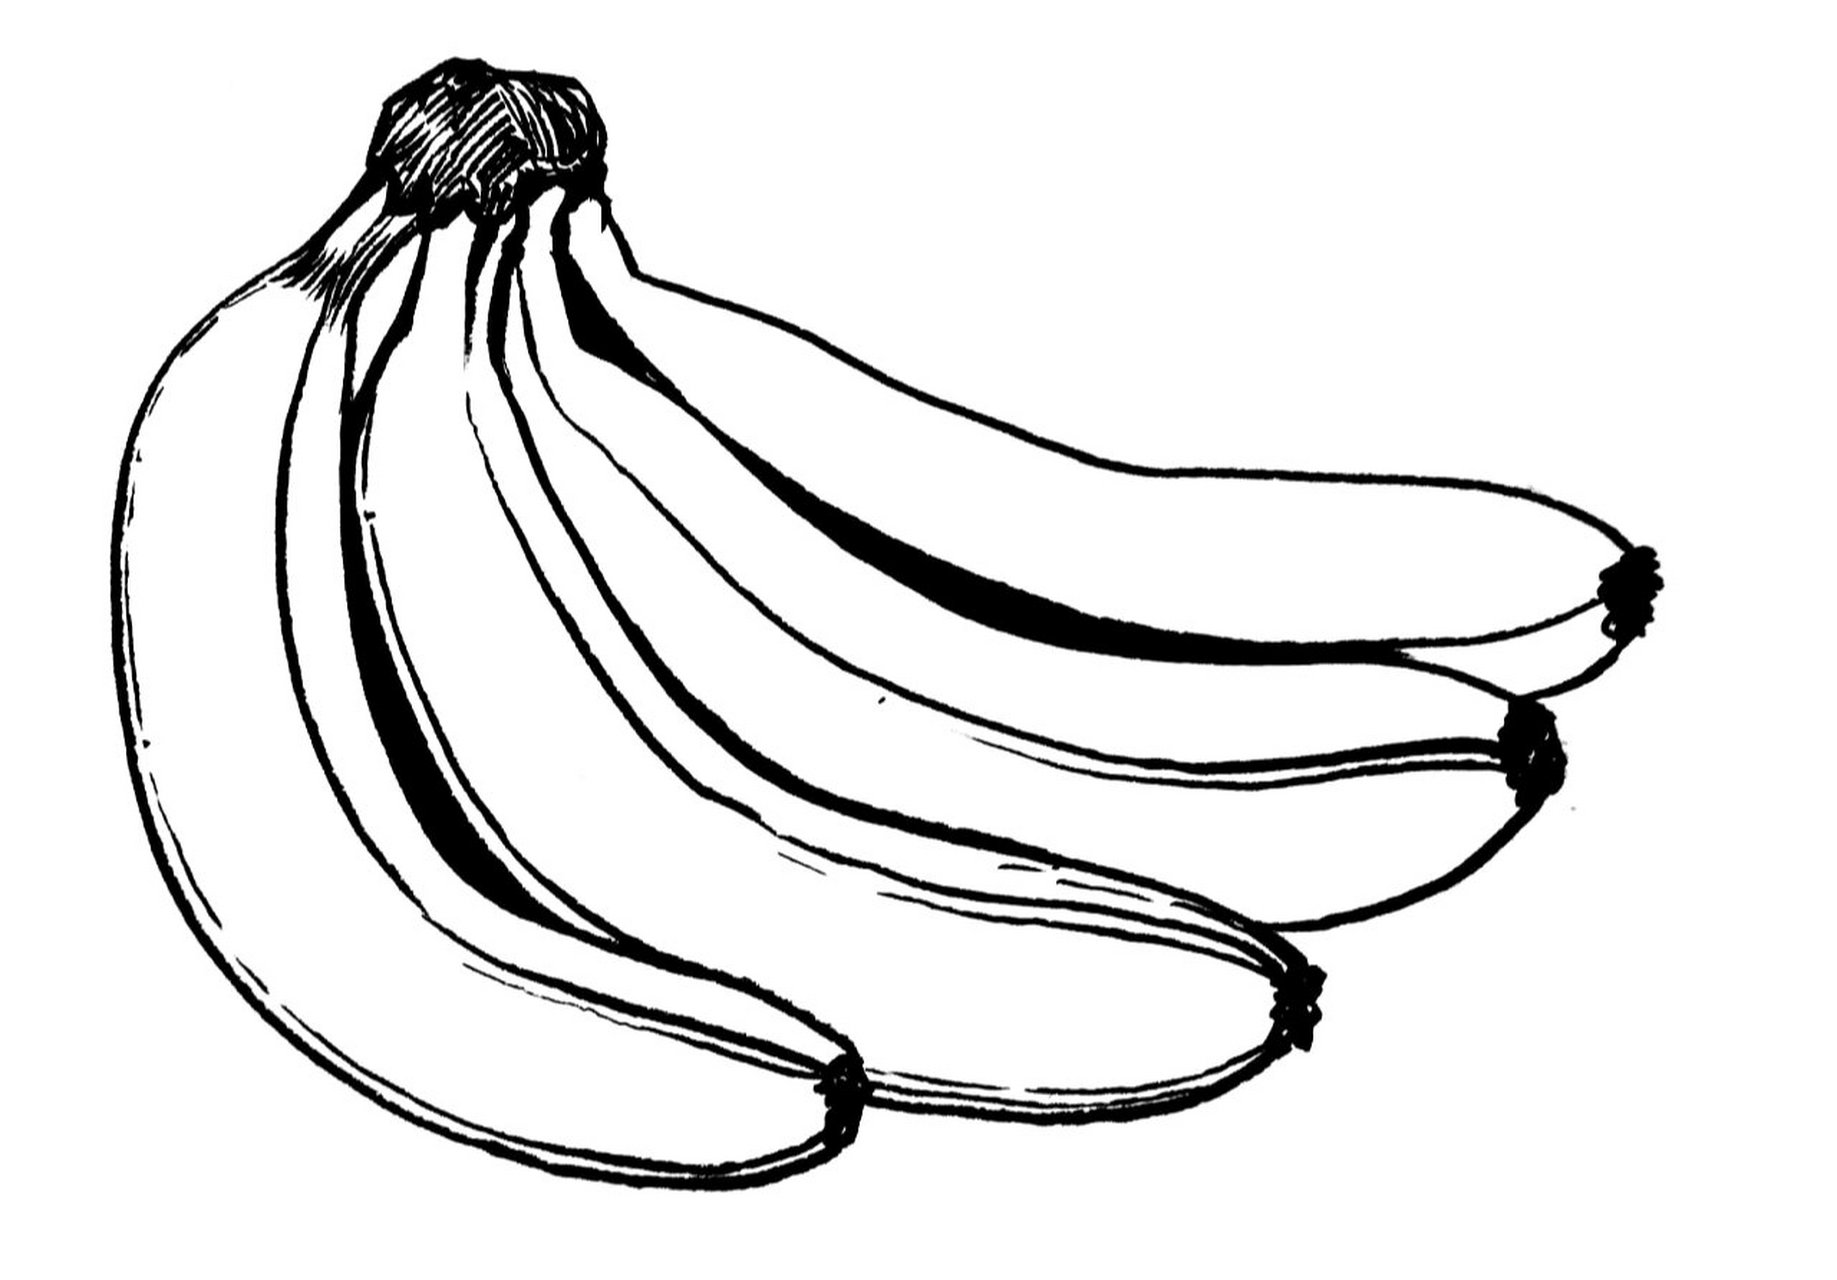 《香蕉写生》 适合年龄:8岁以上 绘画工具:铅笔,橡皮,勾线笔,素描纸